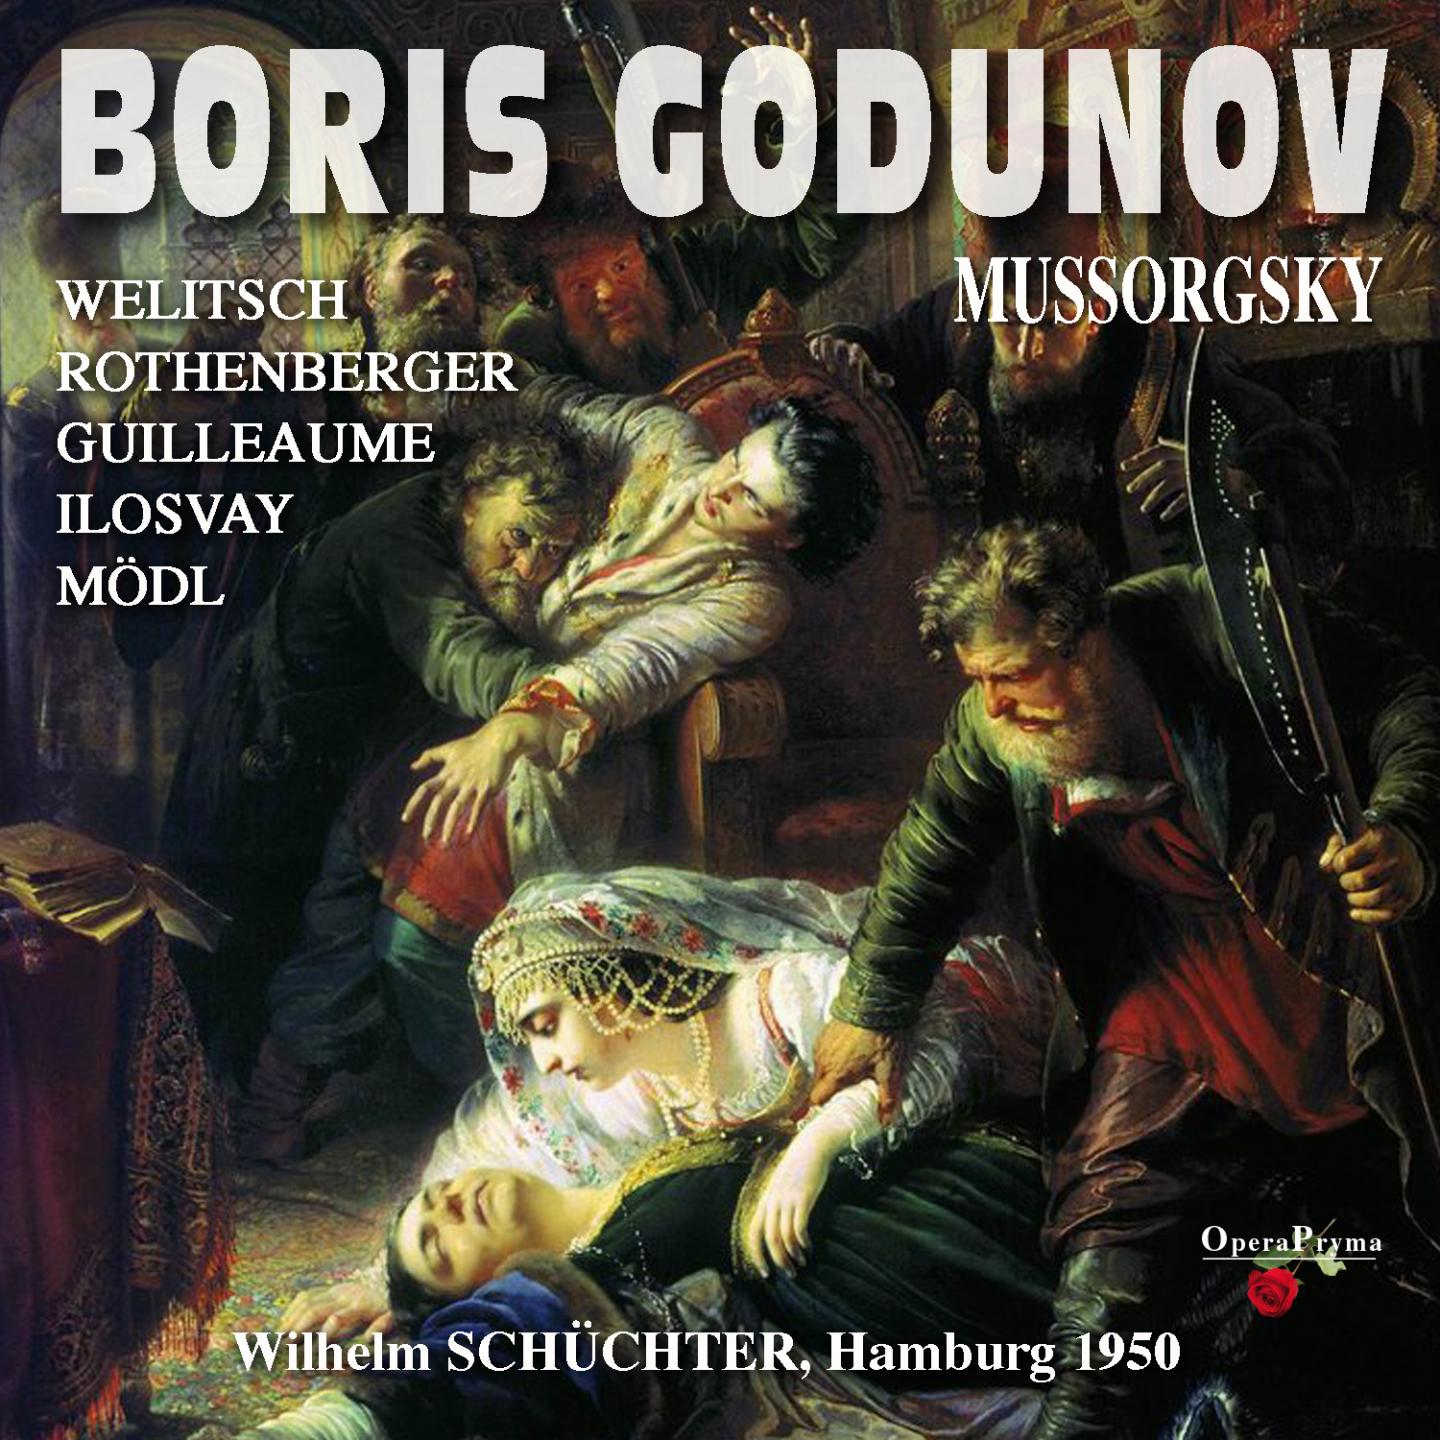 Boris Godunov, Act IV, Scene 12: "Wir, Dimitrij Iwanowitsch, wir von Gottes Gnaden" (Dimitri)